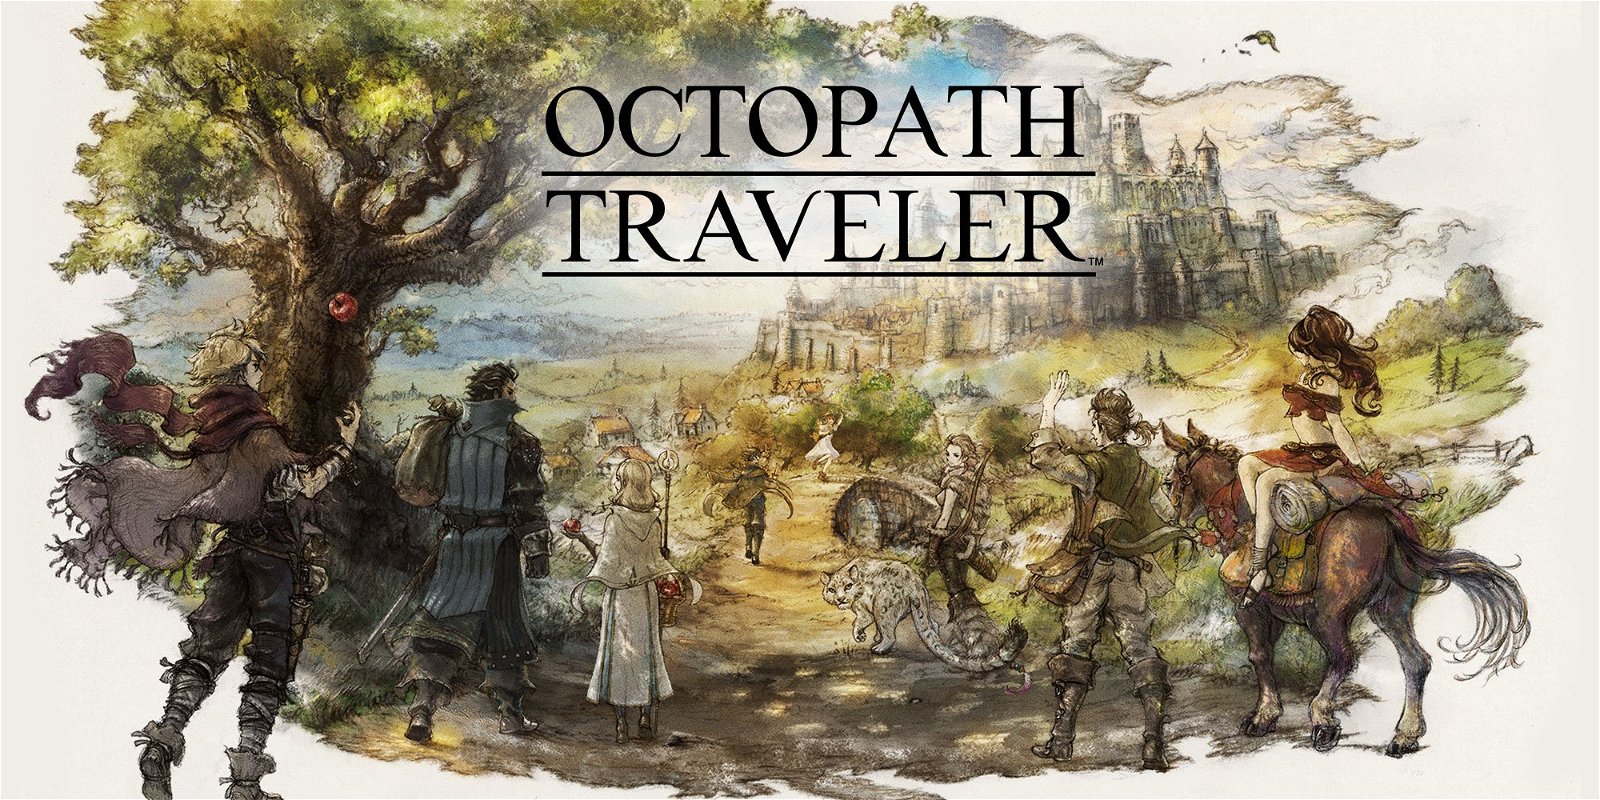 Octopath Traveler scomparso: ci sono buone notizie